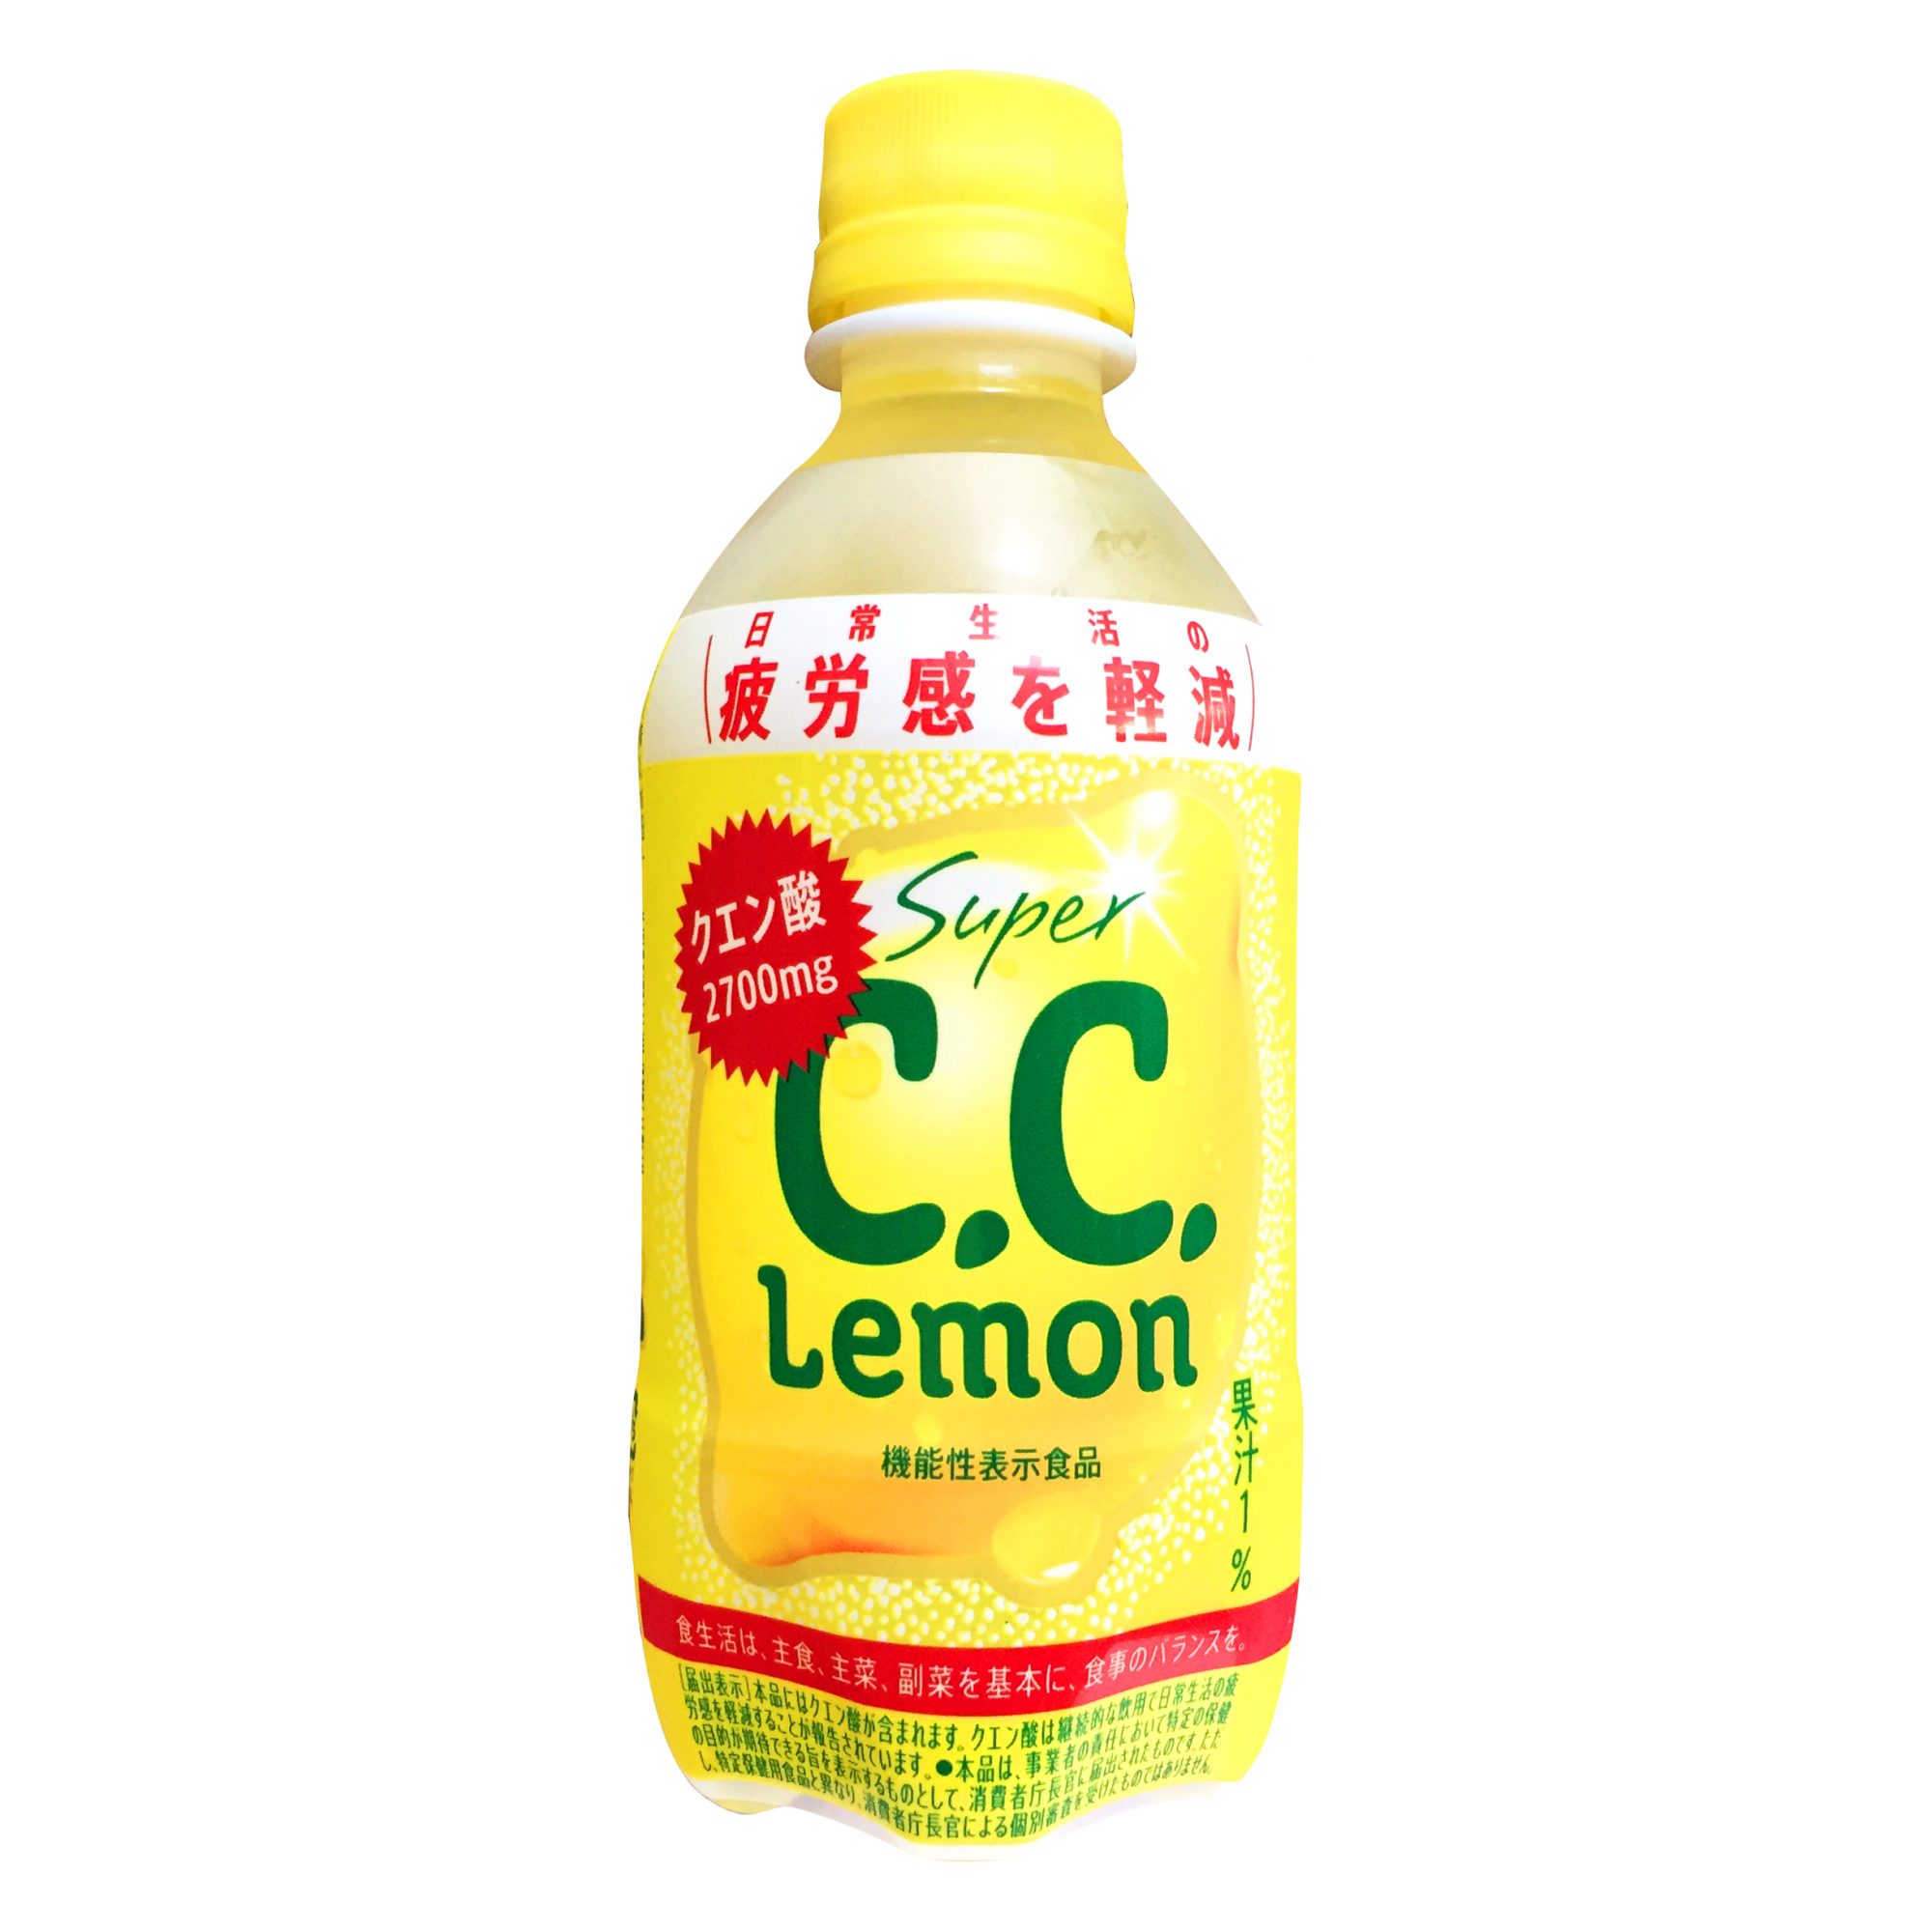 サントリー『スーパーC.C.レモン（機能性表示食品）』は強めの炭酸とすっぱい刺激がガツンと心地よく身体に嬉しい成分入りで疲れている人にも超オススメ◎